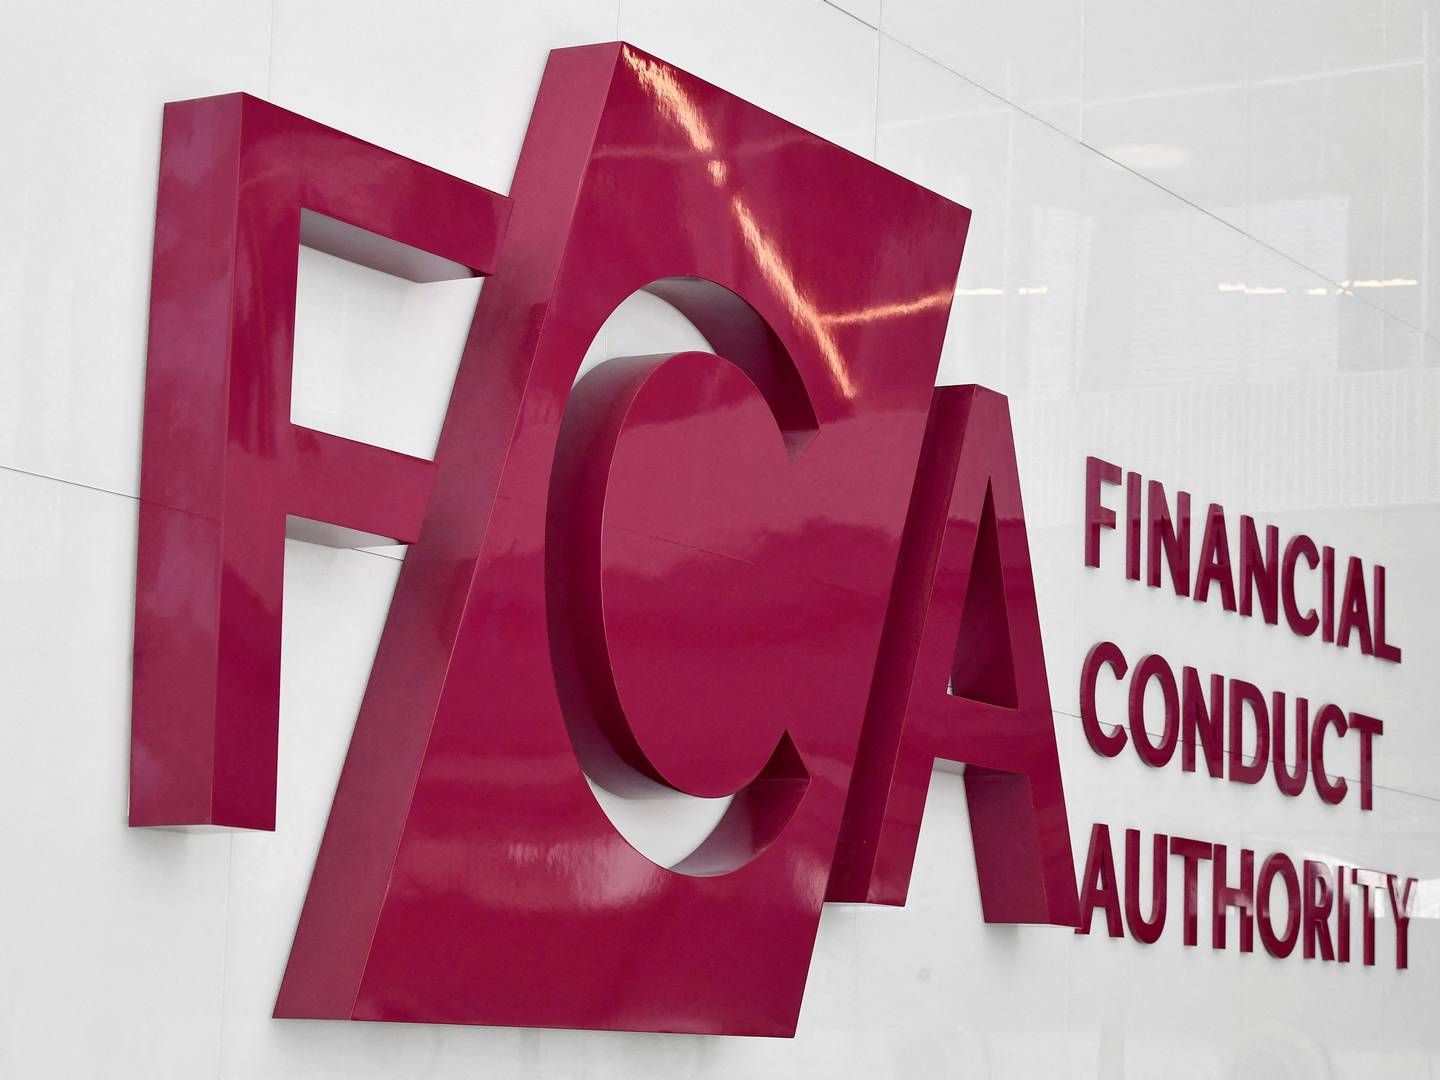 Det britiske finanstilsynet hedder Financial Conduct Authority og forkortes FCA. | Foto: Toby Melville/Reuters/Ritzau Scanpix